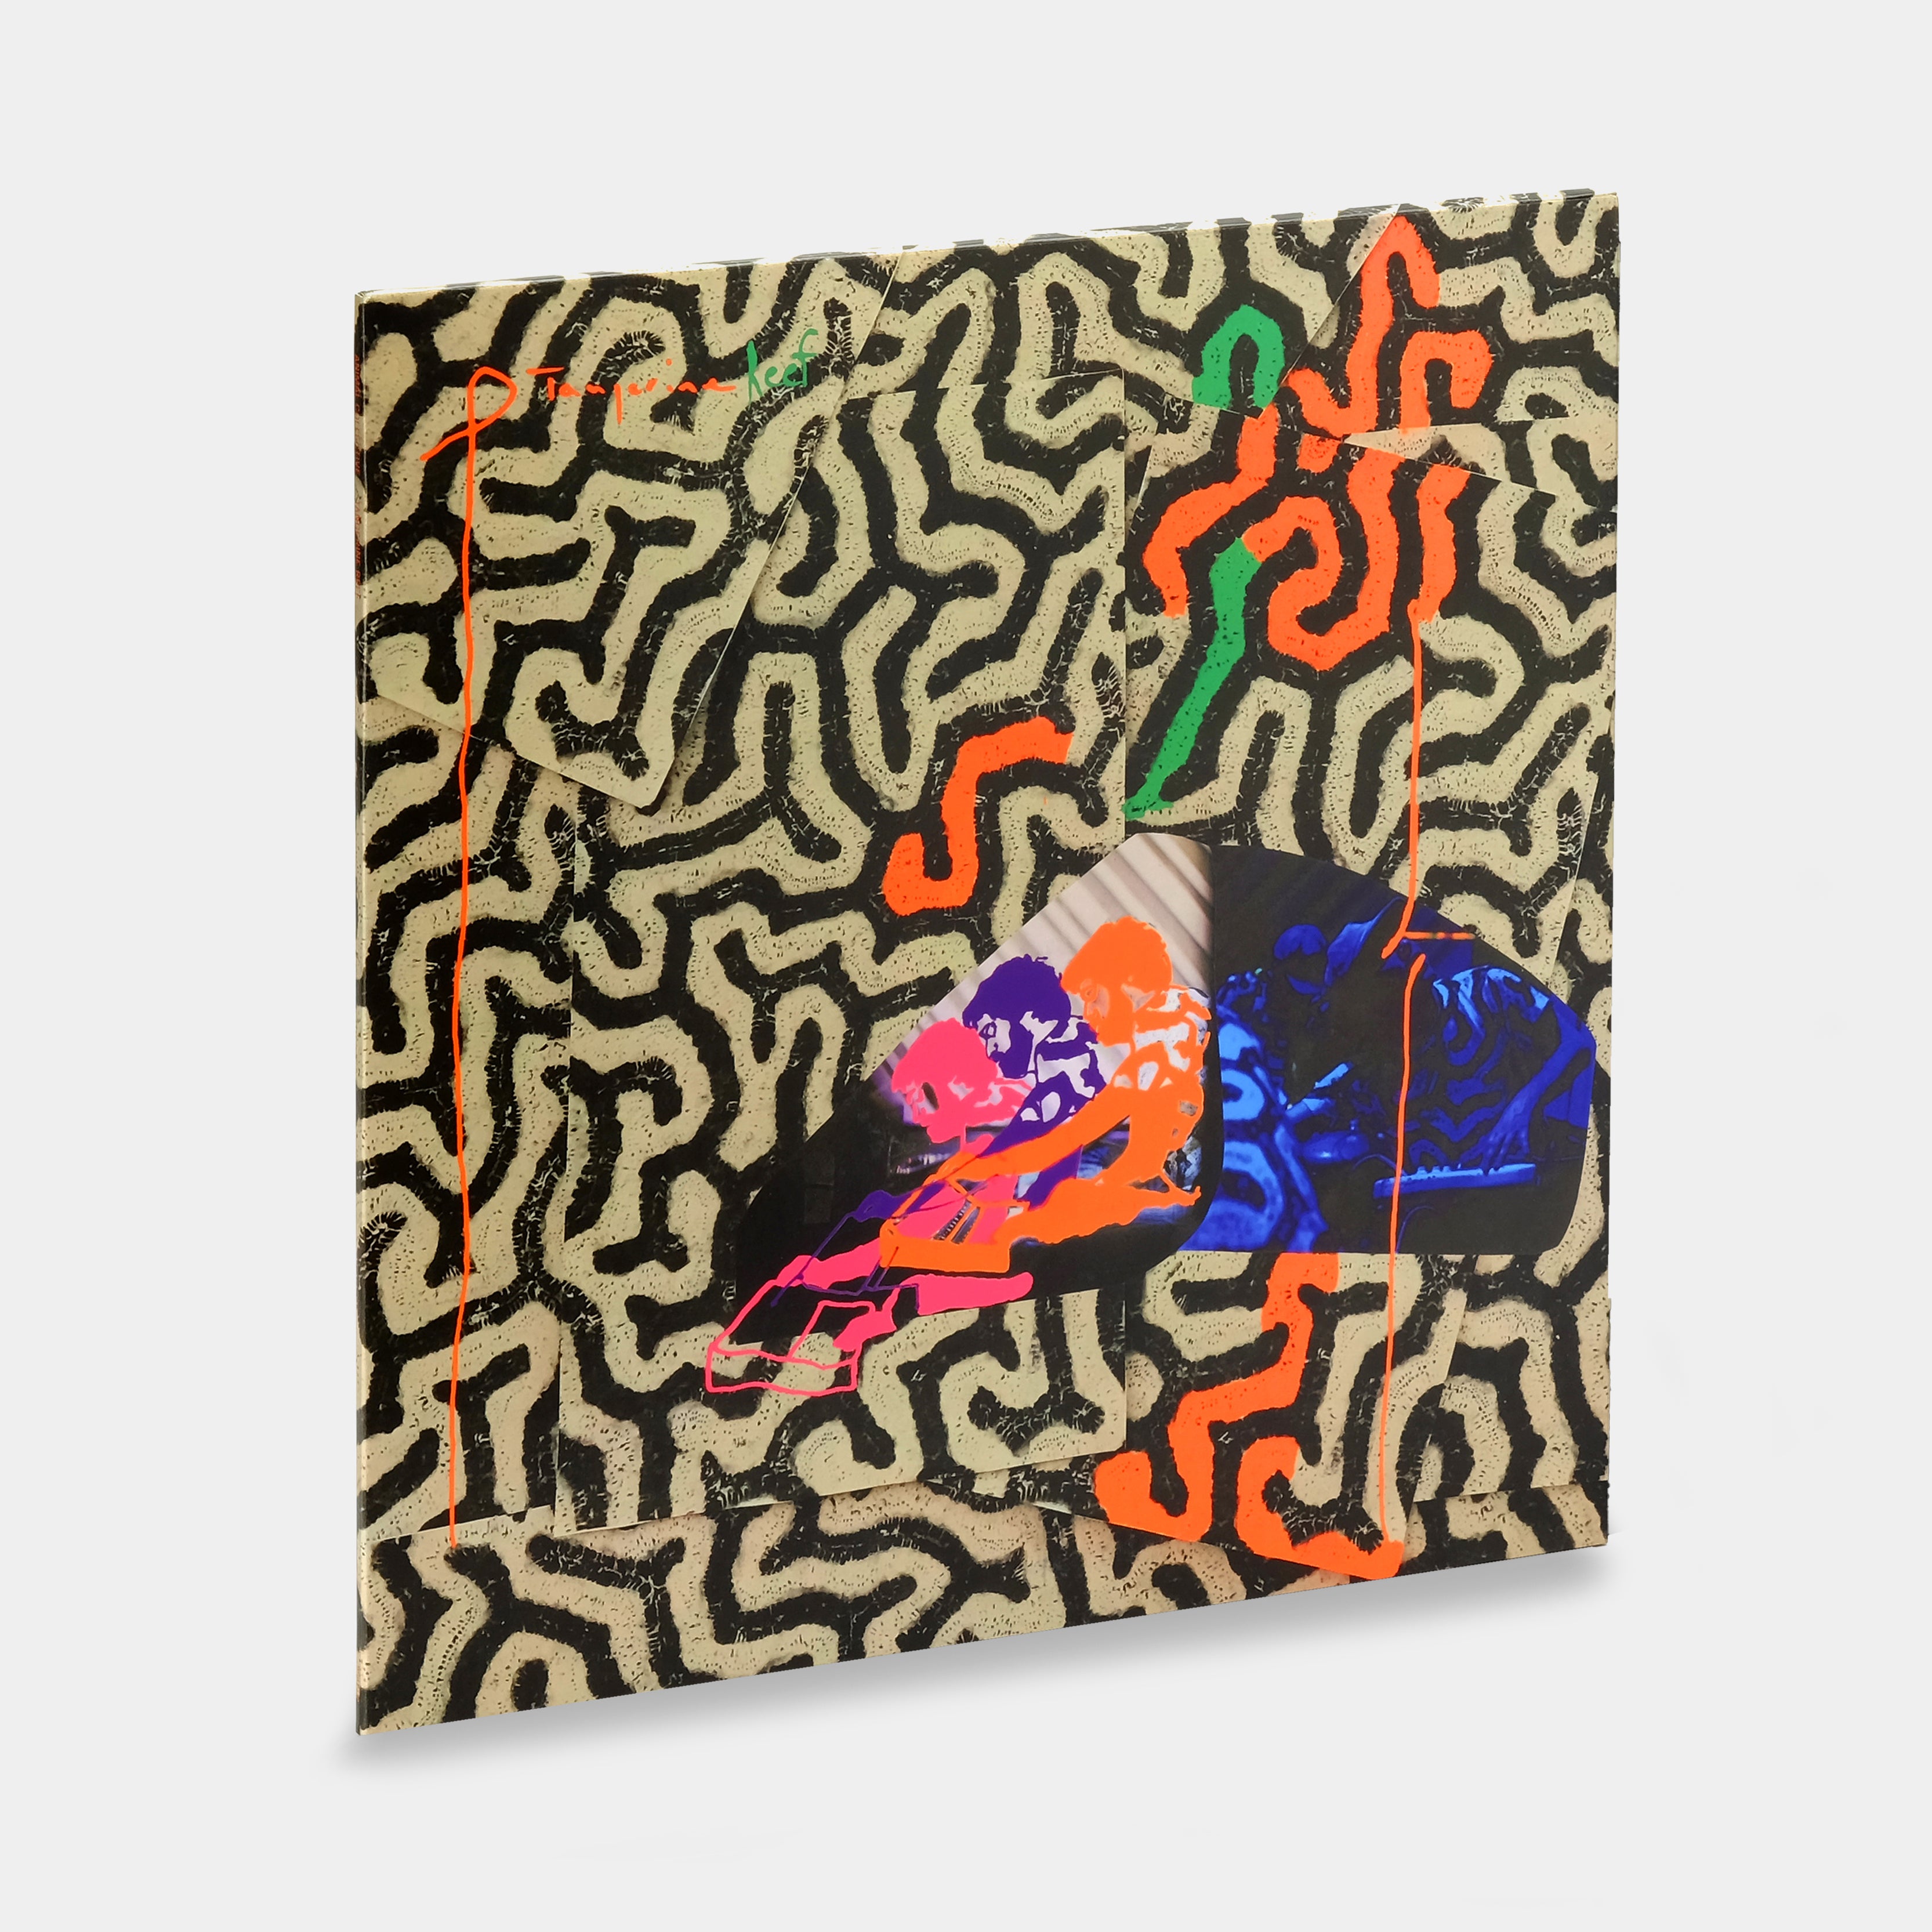 Animal Collective - Tangerine Reef 2xLP Vinyl Record